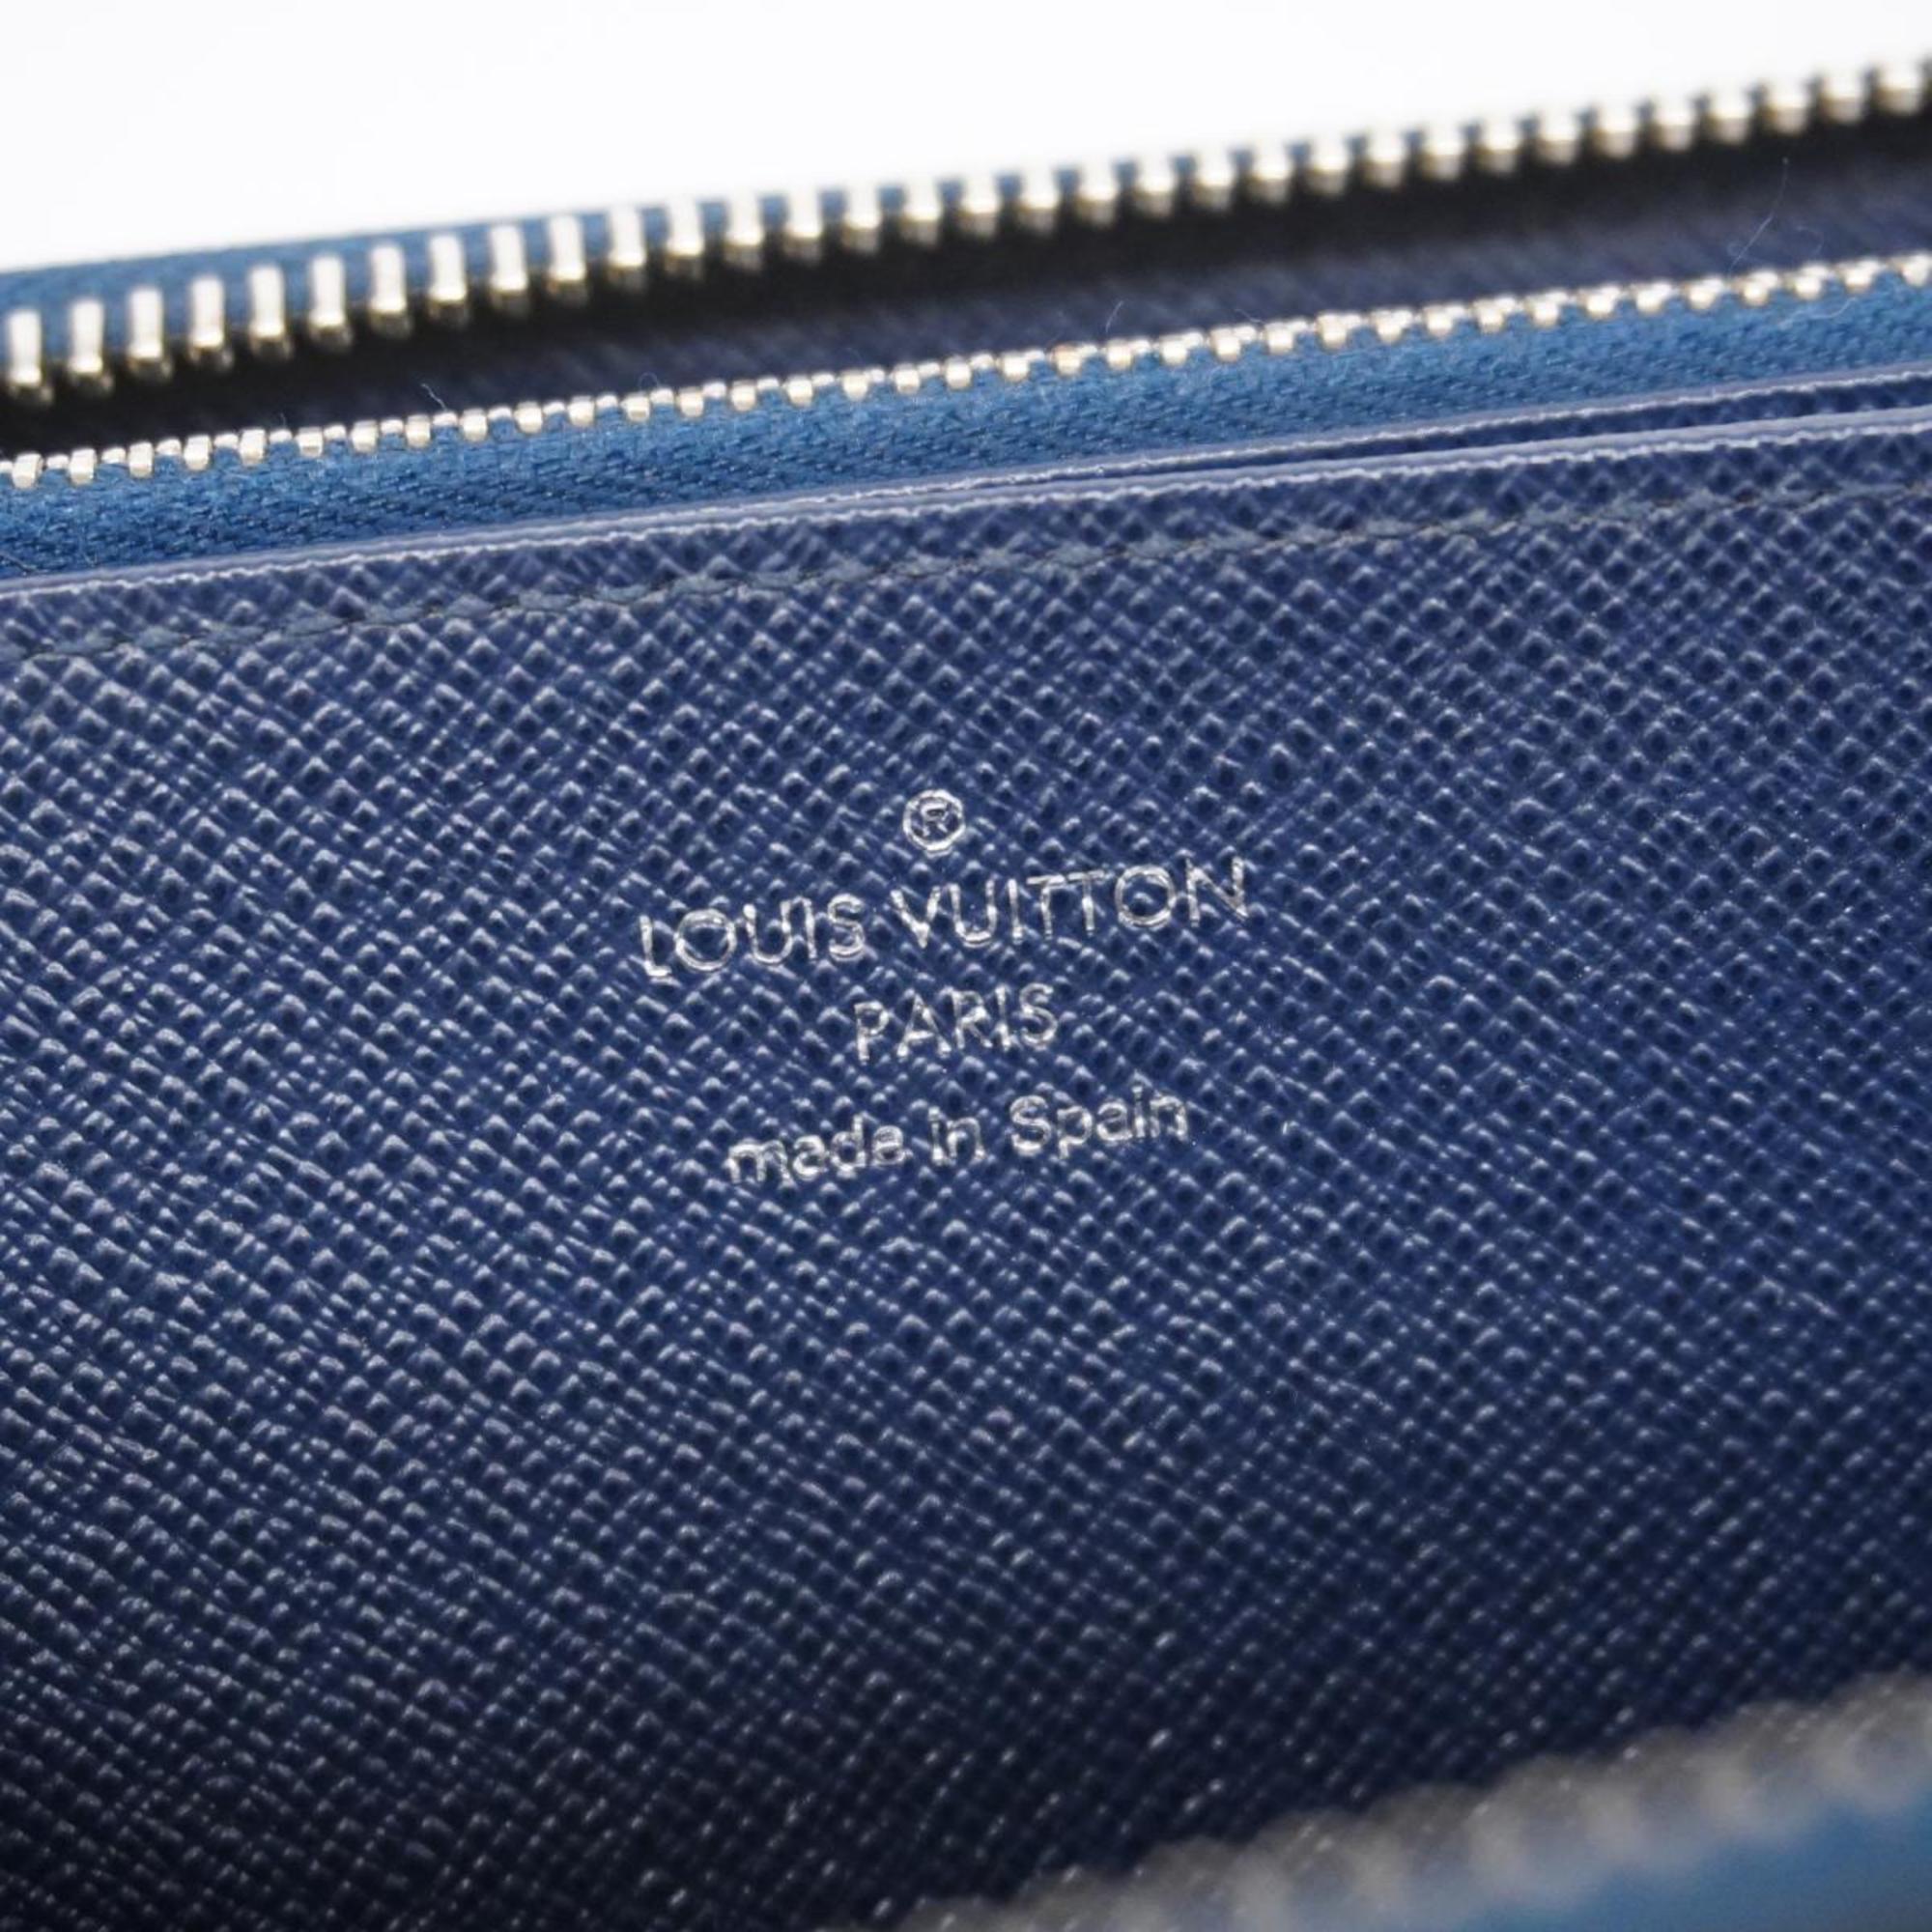 ルイ・ヴィトン(Louis Vuitton) ルイ・ヴィトン 長財布 エピ ジッピーウォレット M60307 アンディゴブルーメンズ